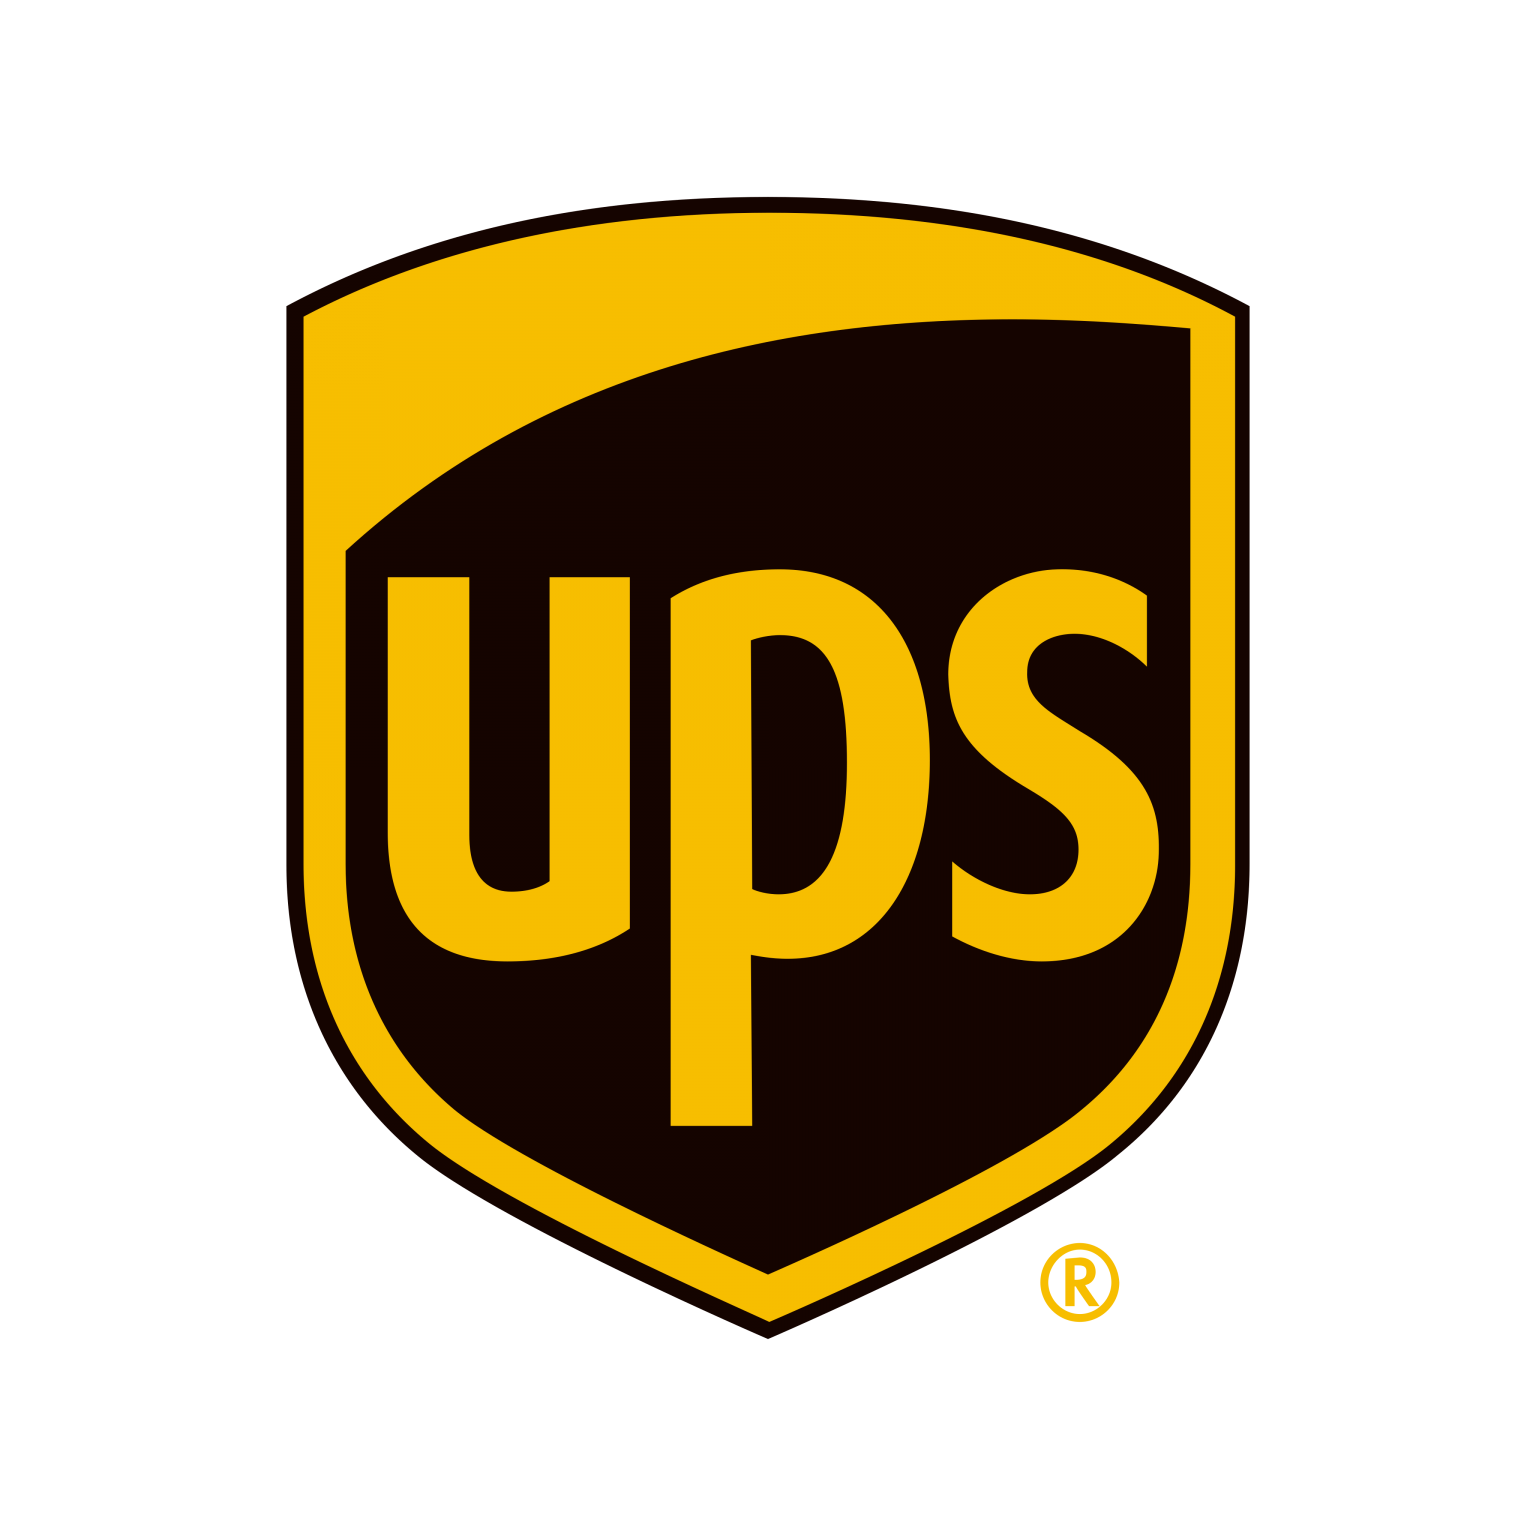 Ups Logo